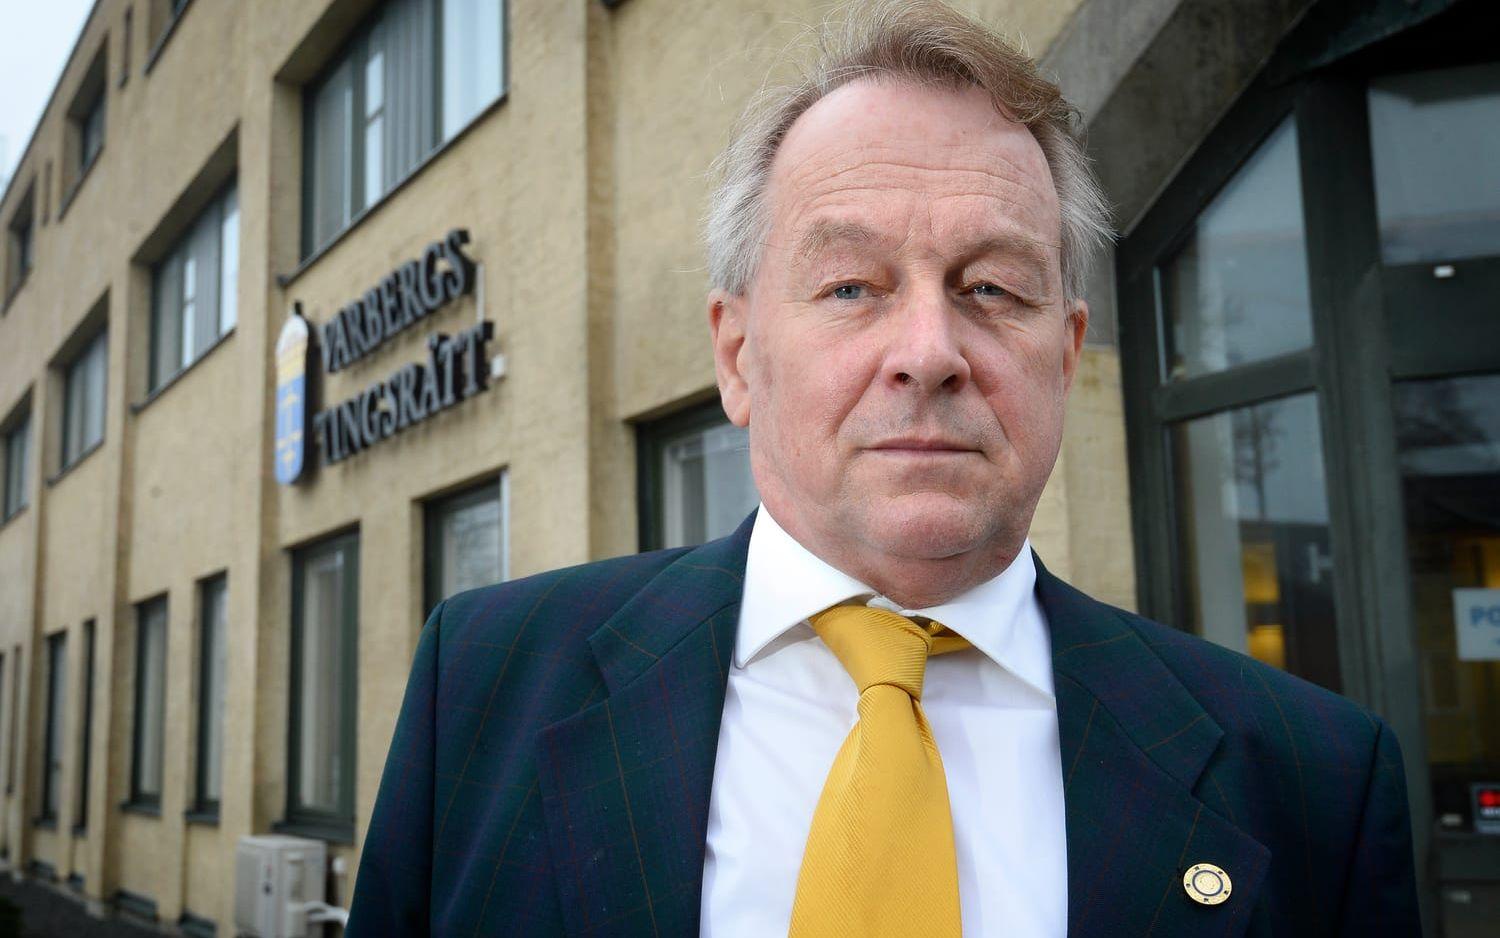 Den moderate politikern Sven Andersson hävdar att han har fått fika gratis ibland på Hotell Gästis och har betalat för andra måltider där. Bild: Annika Karlbom